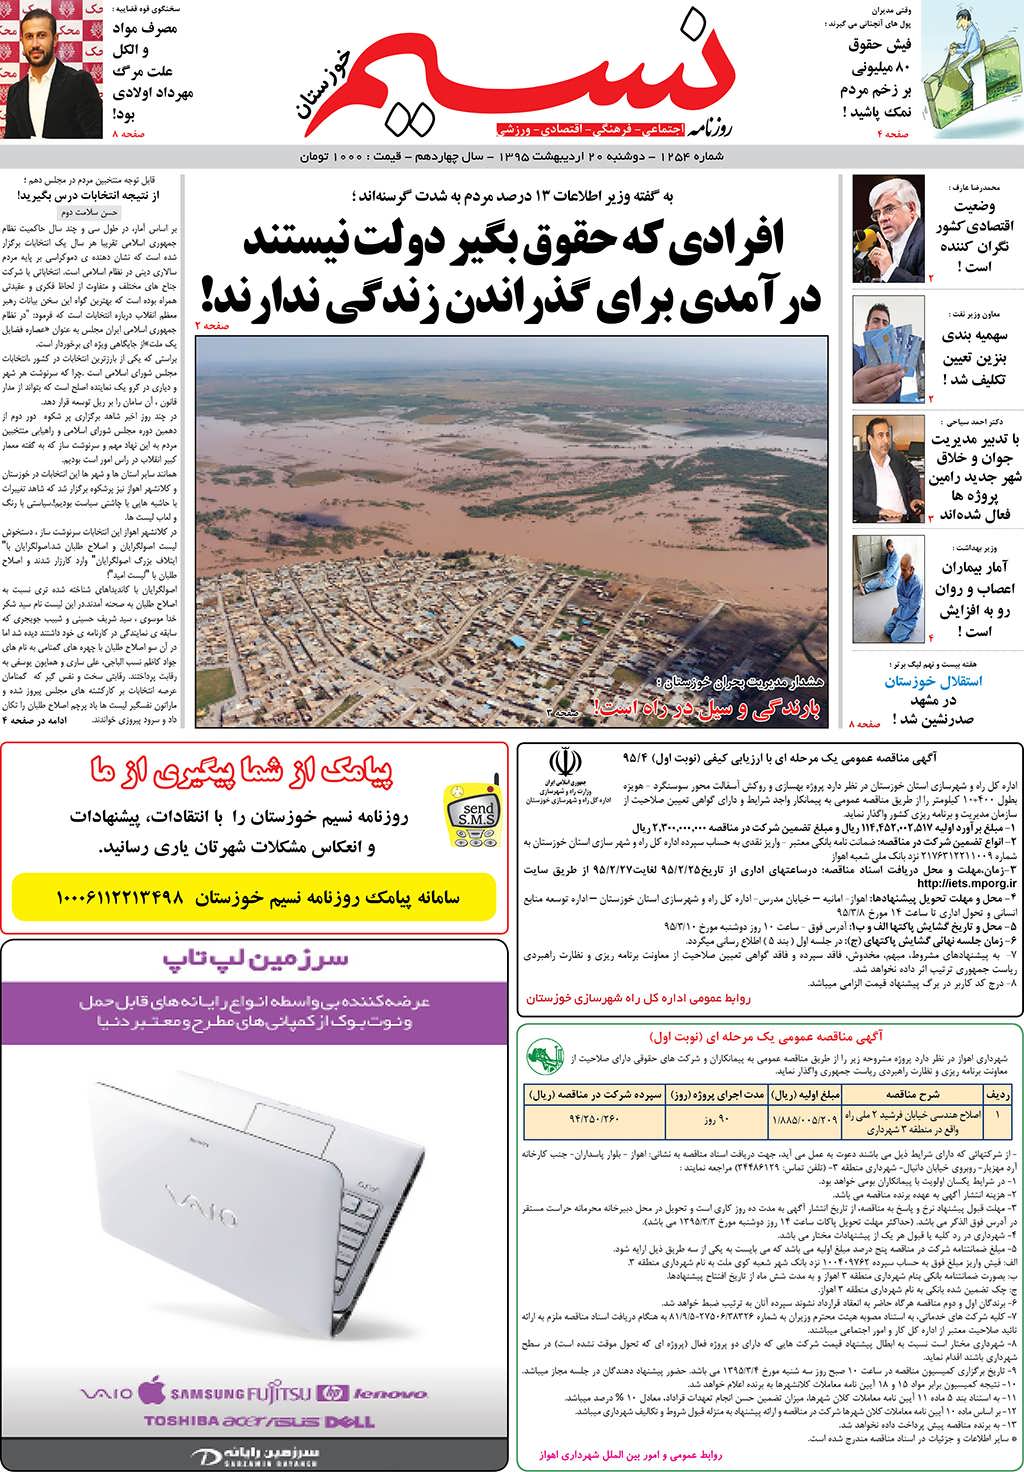 صفحه اصلی روزنامه نسیم شماره 1254